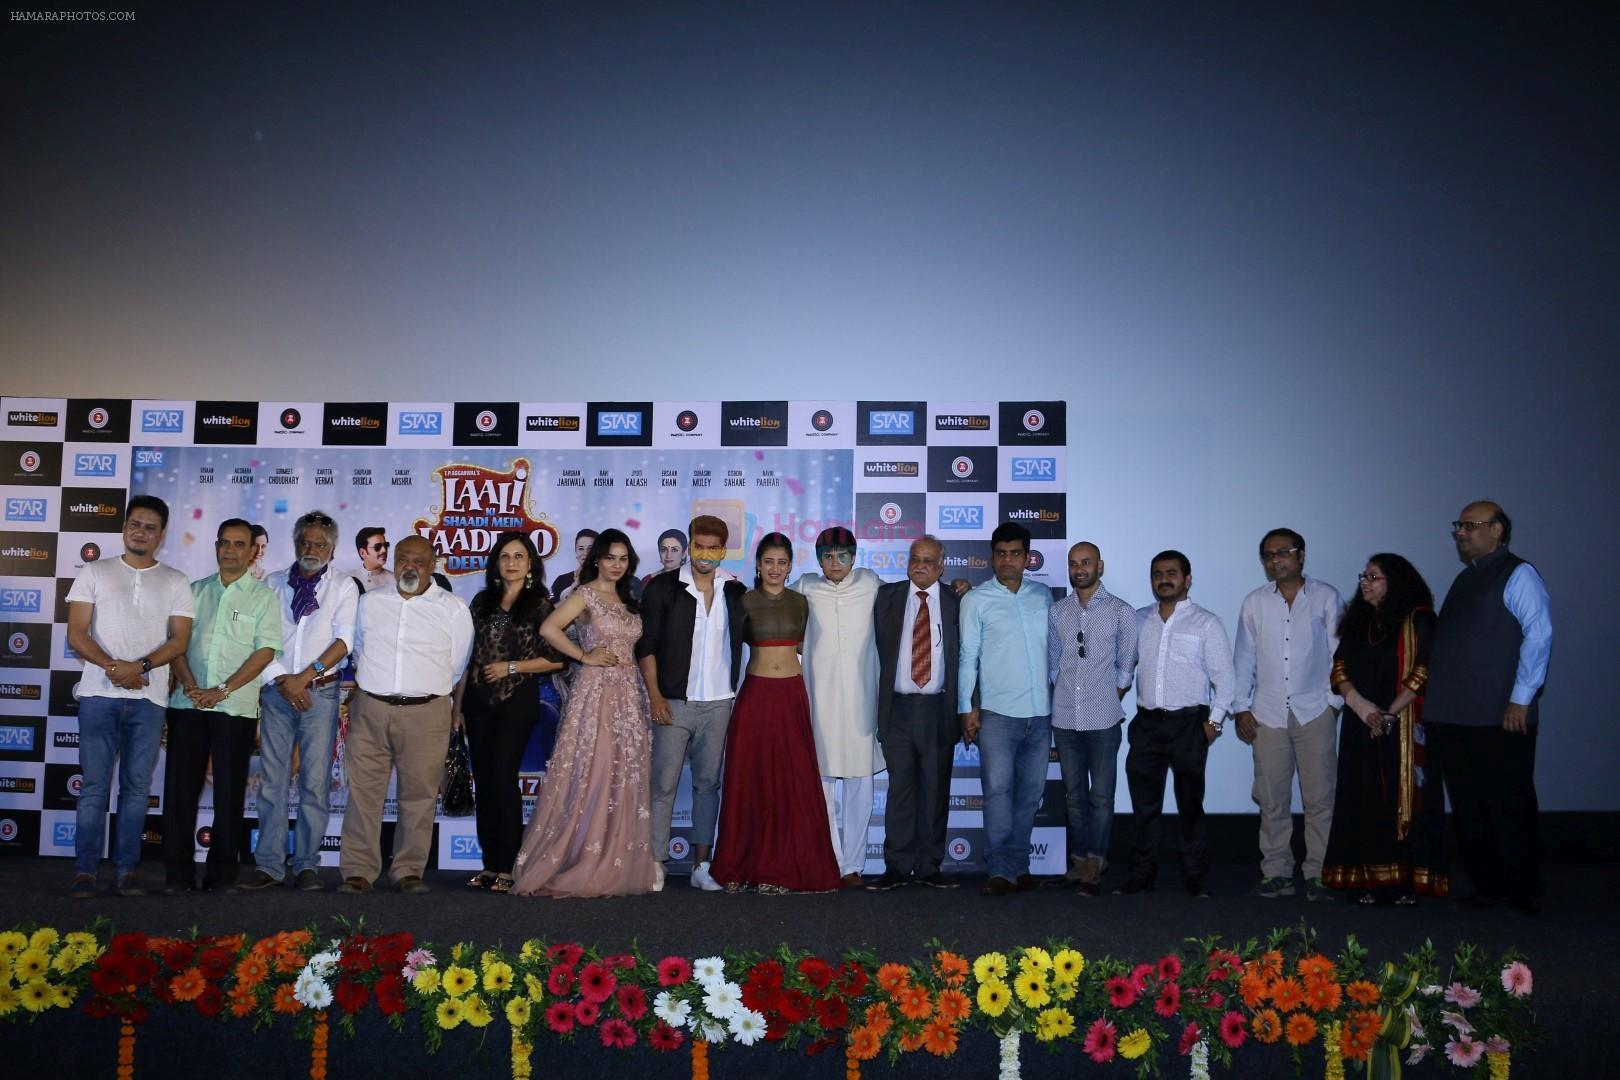 Akshara Haasan, Gurmeet Choudhary, Vivaan Shah, Kavitta Verma, Saurabh Shukla at the Trailer Launch Of Film Laali Ki Shaadi Mein Laaddoo Deewana on 27th Feb 2017